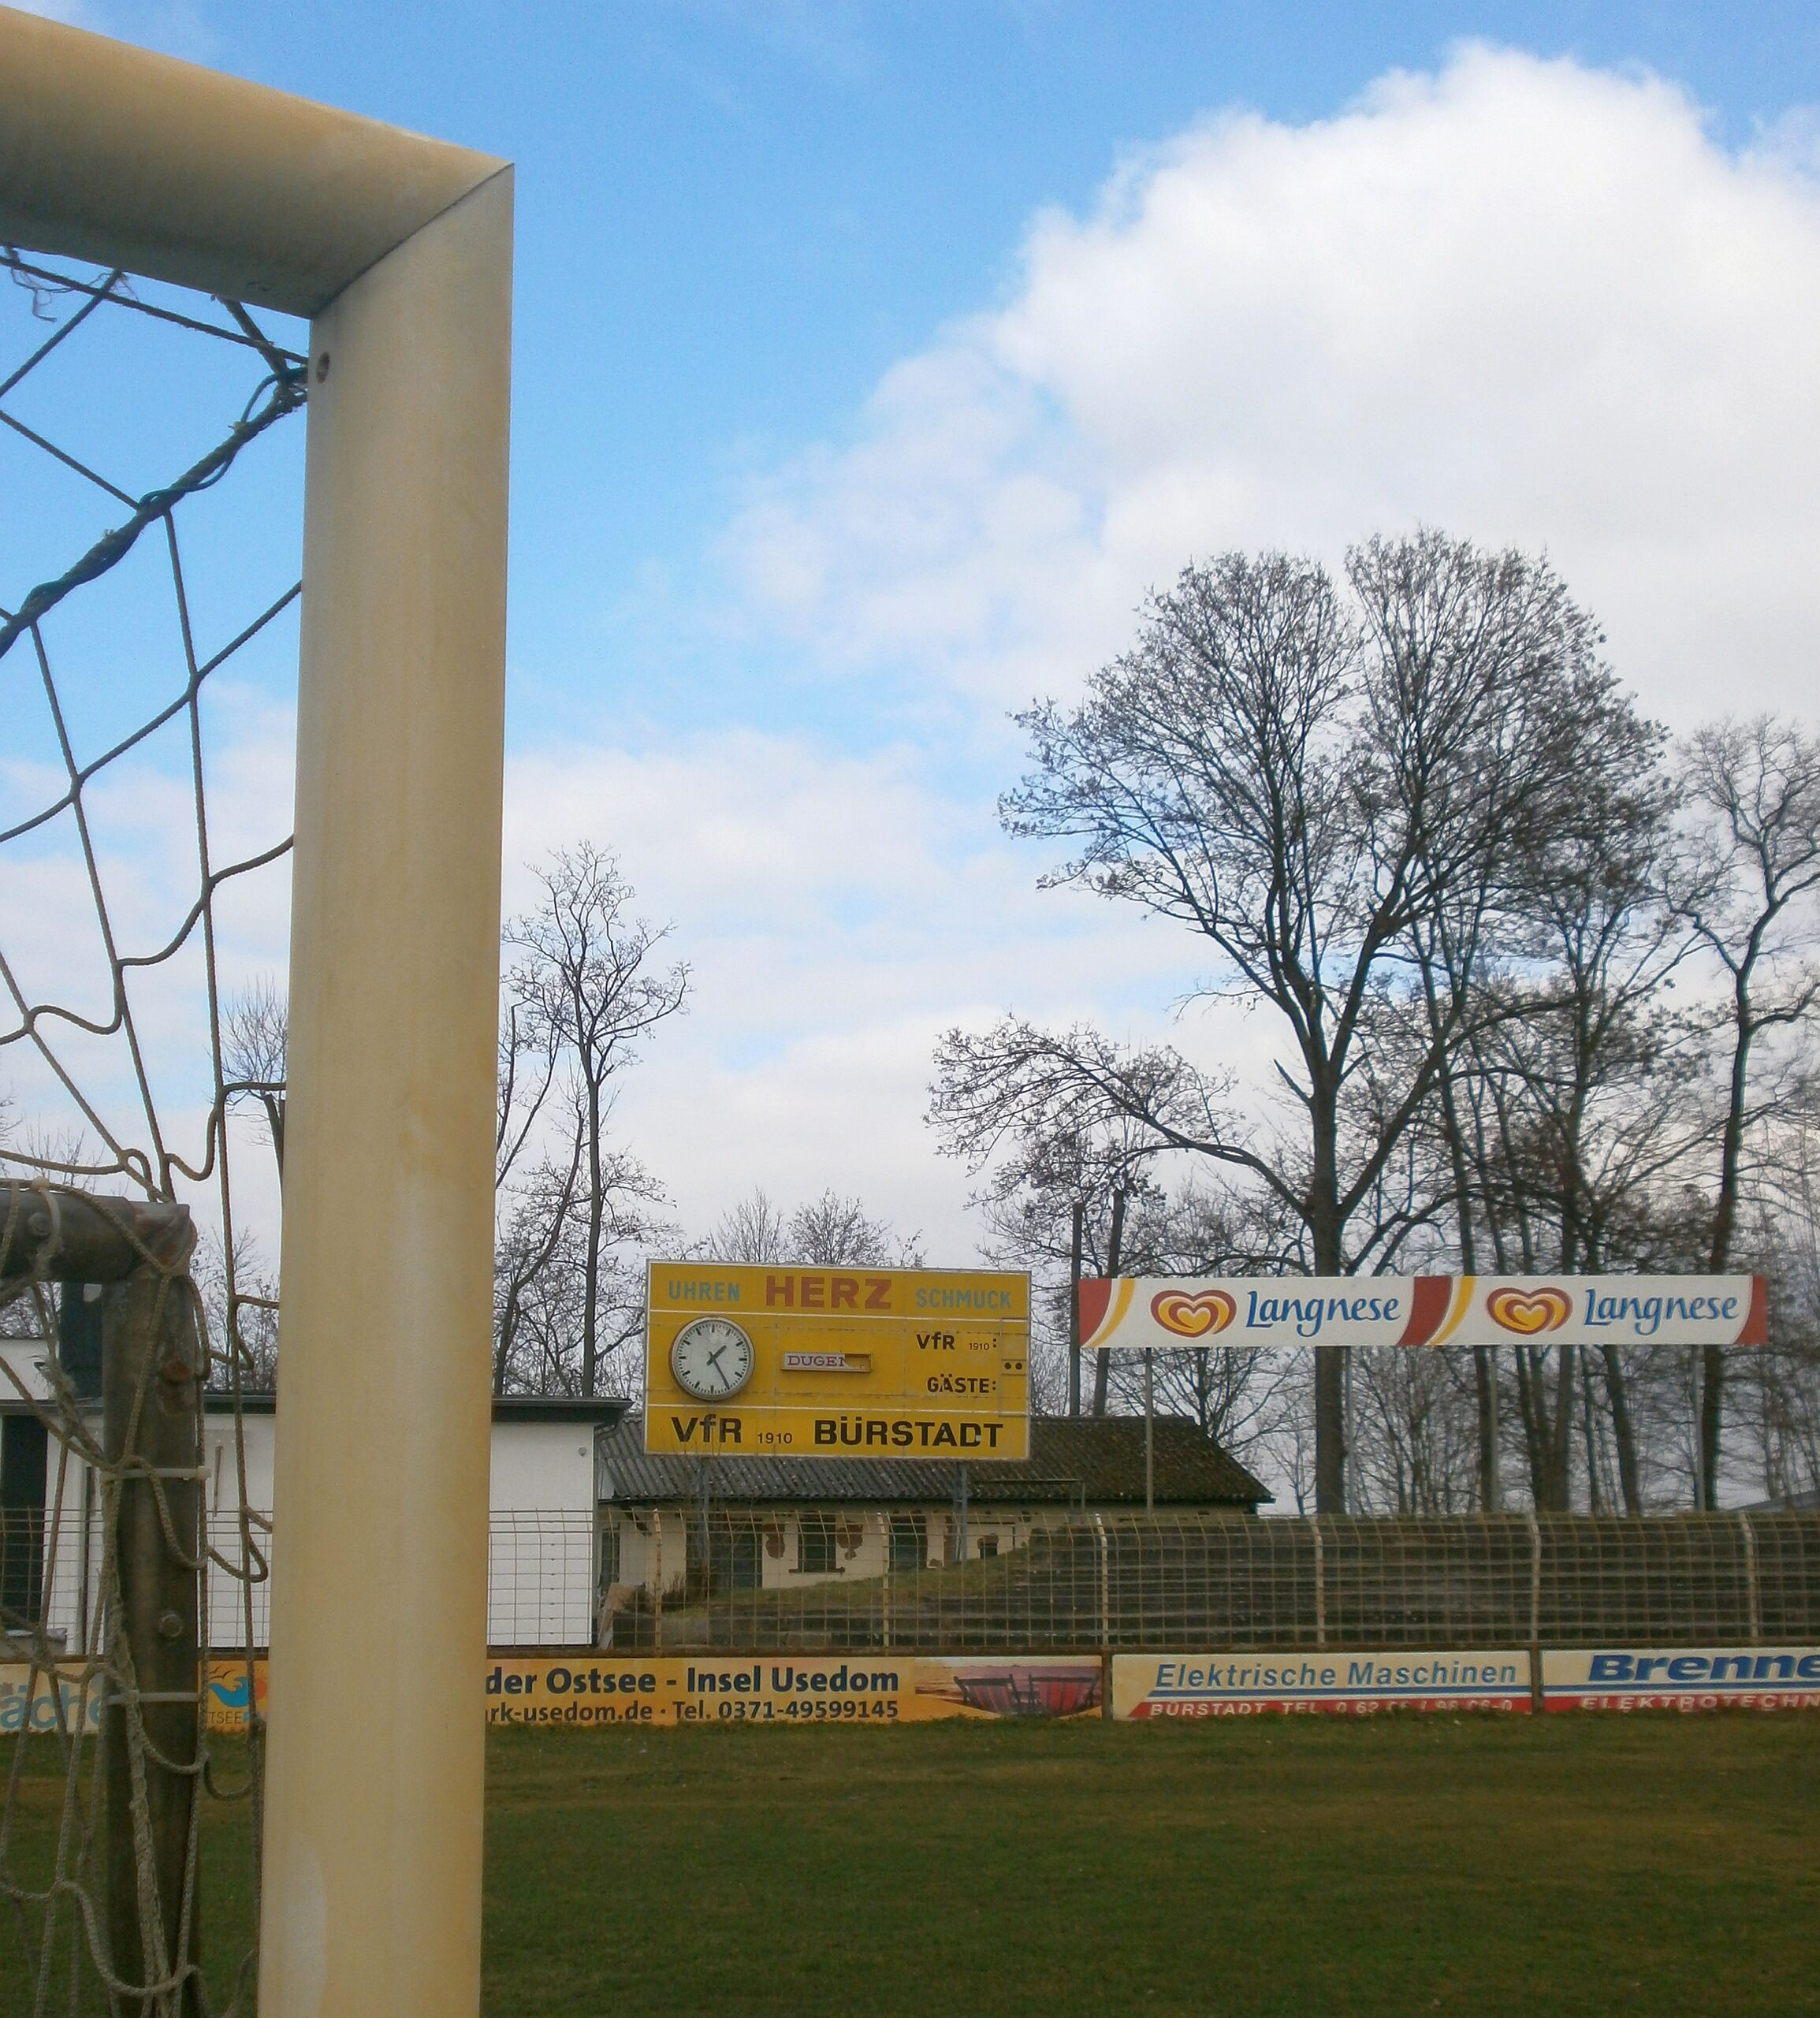 Vergilbte Torpfosten im alten Robert-Kölsch-Stadion in Bürstadt